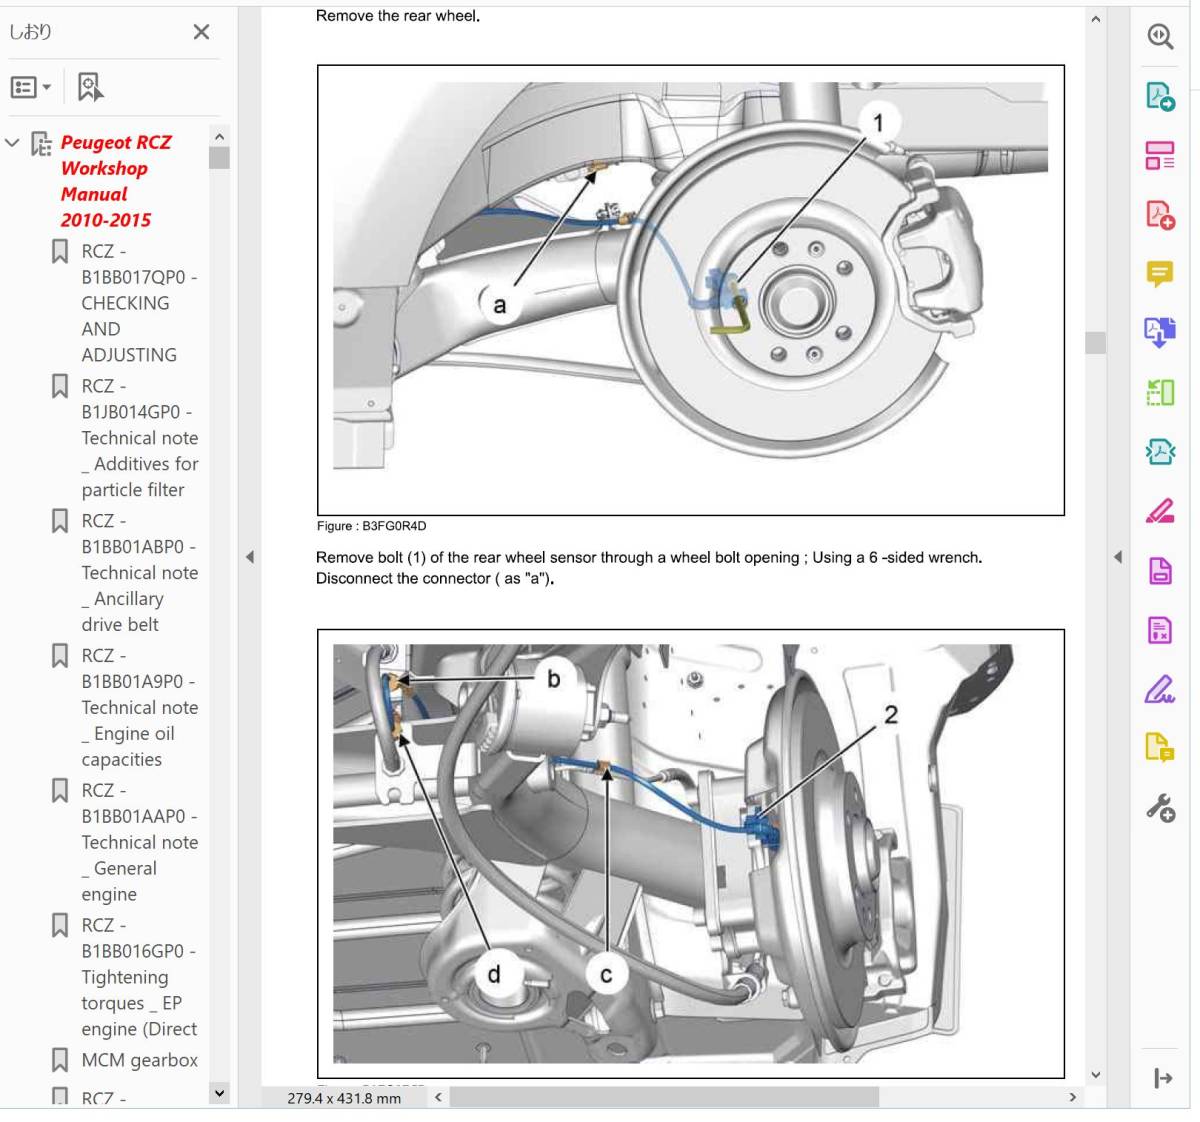  Peugeot RCZ 2010-2015 Factory Work shop manual repair book service book Peugeot